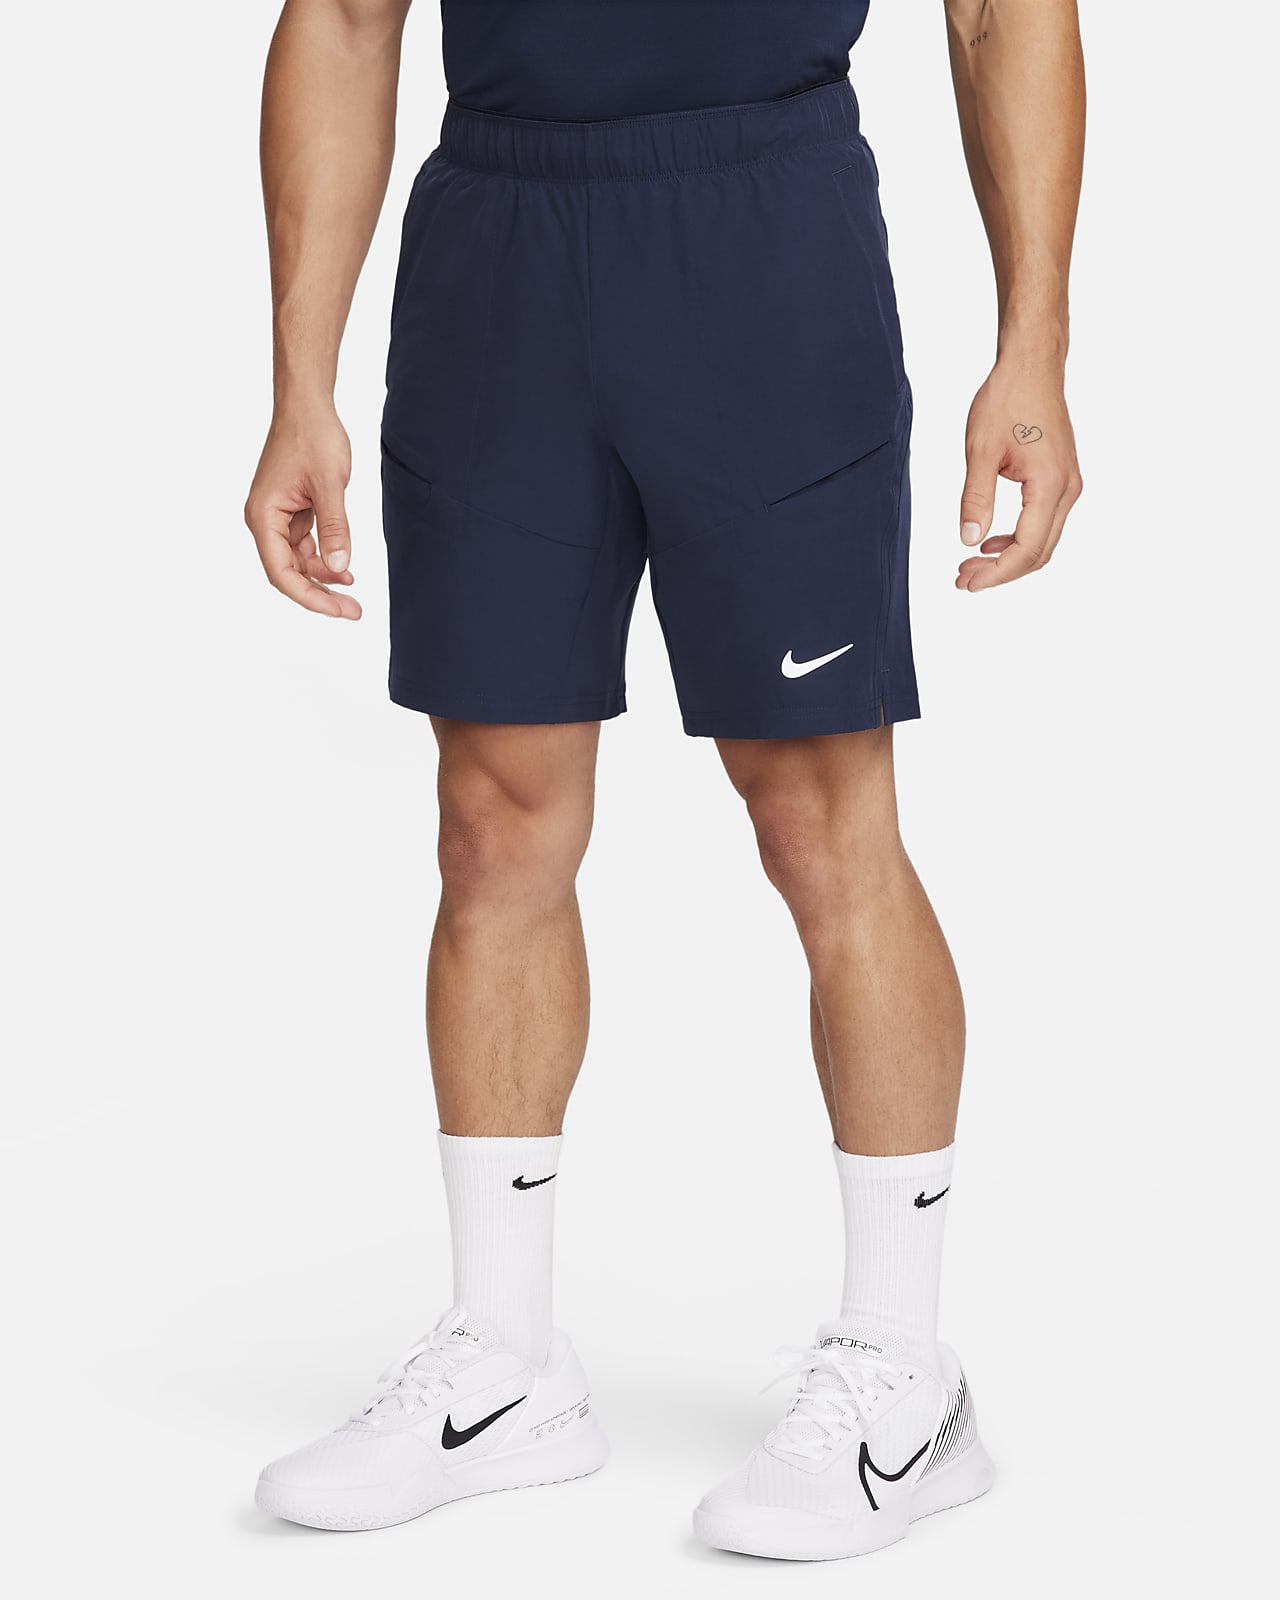 NikeCourt Advantage tennisshorts van 23 cm voor heren